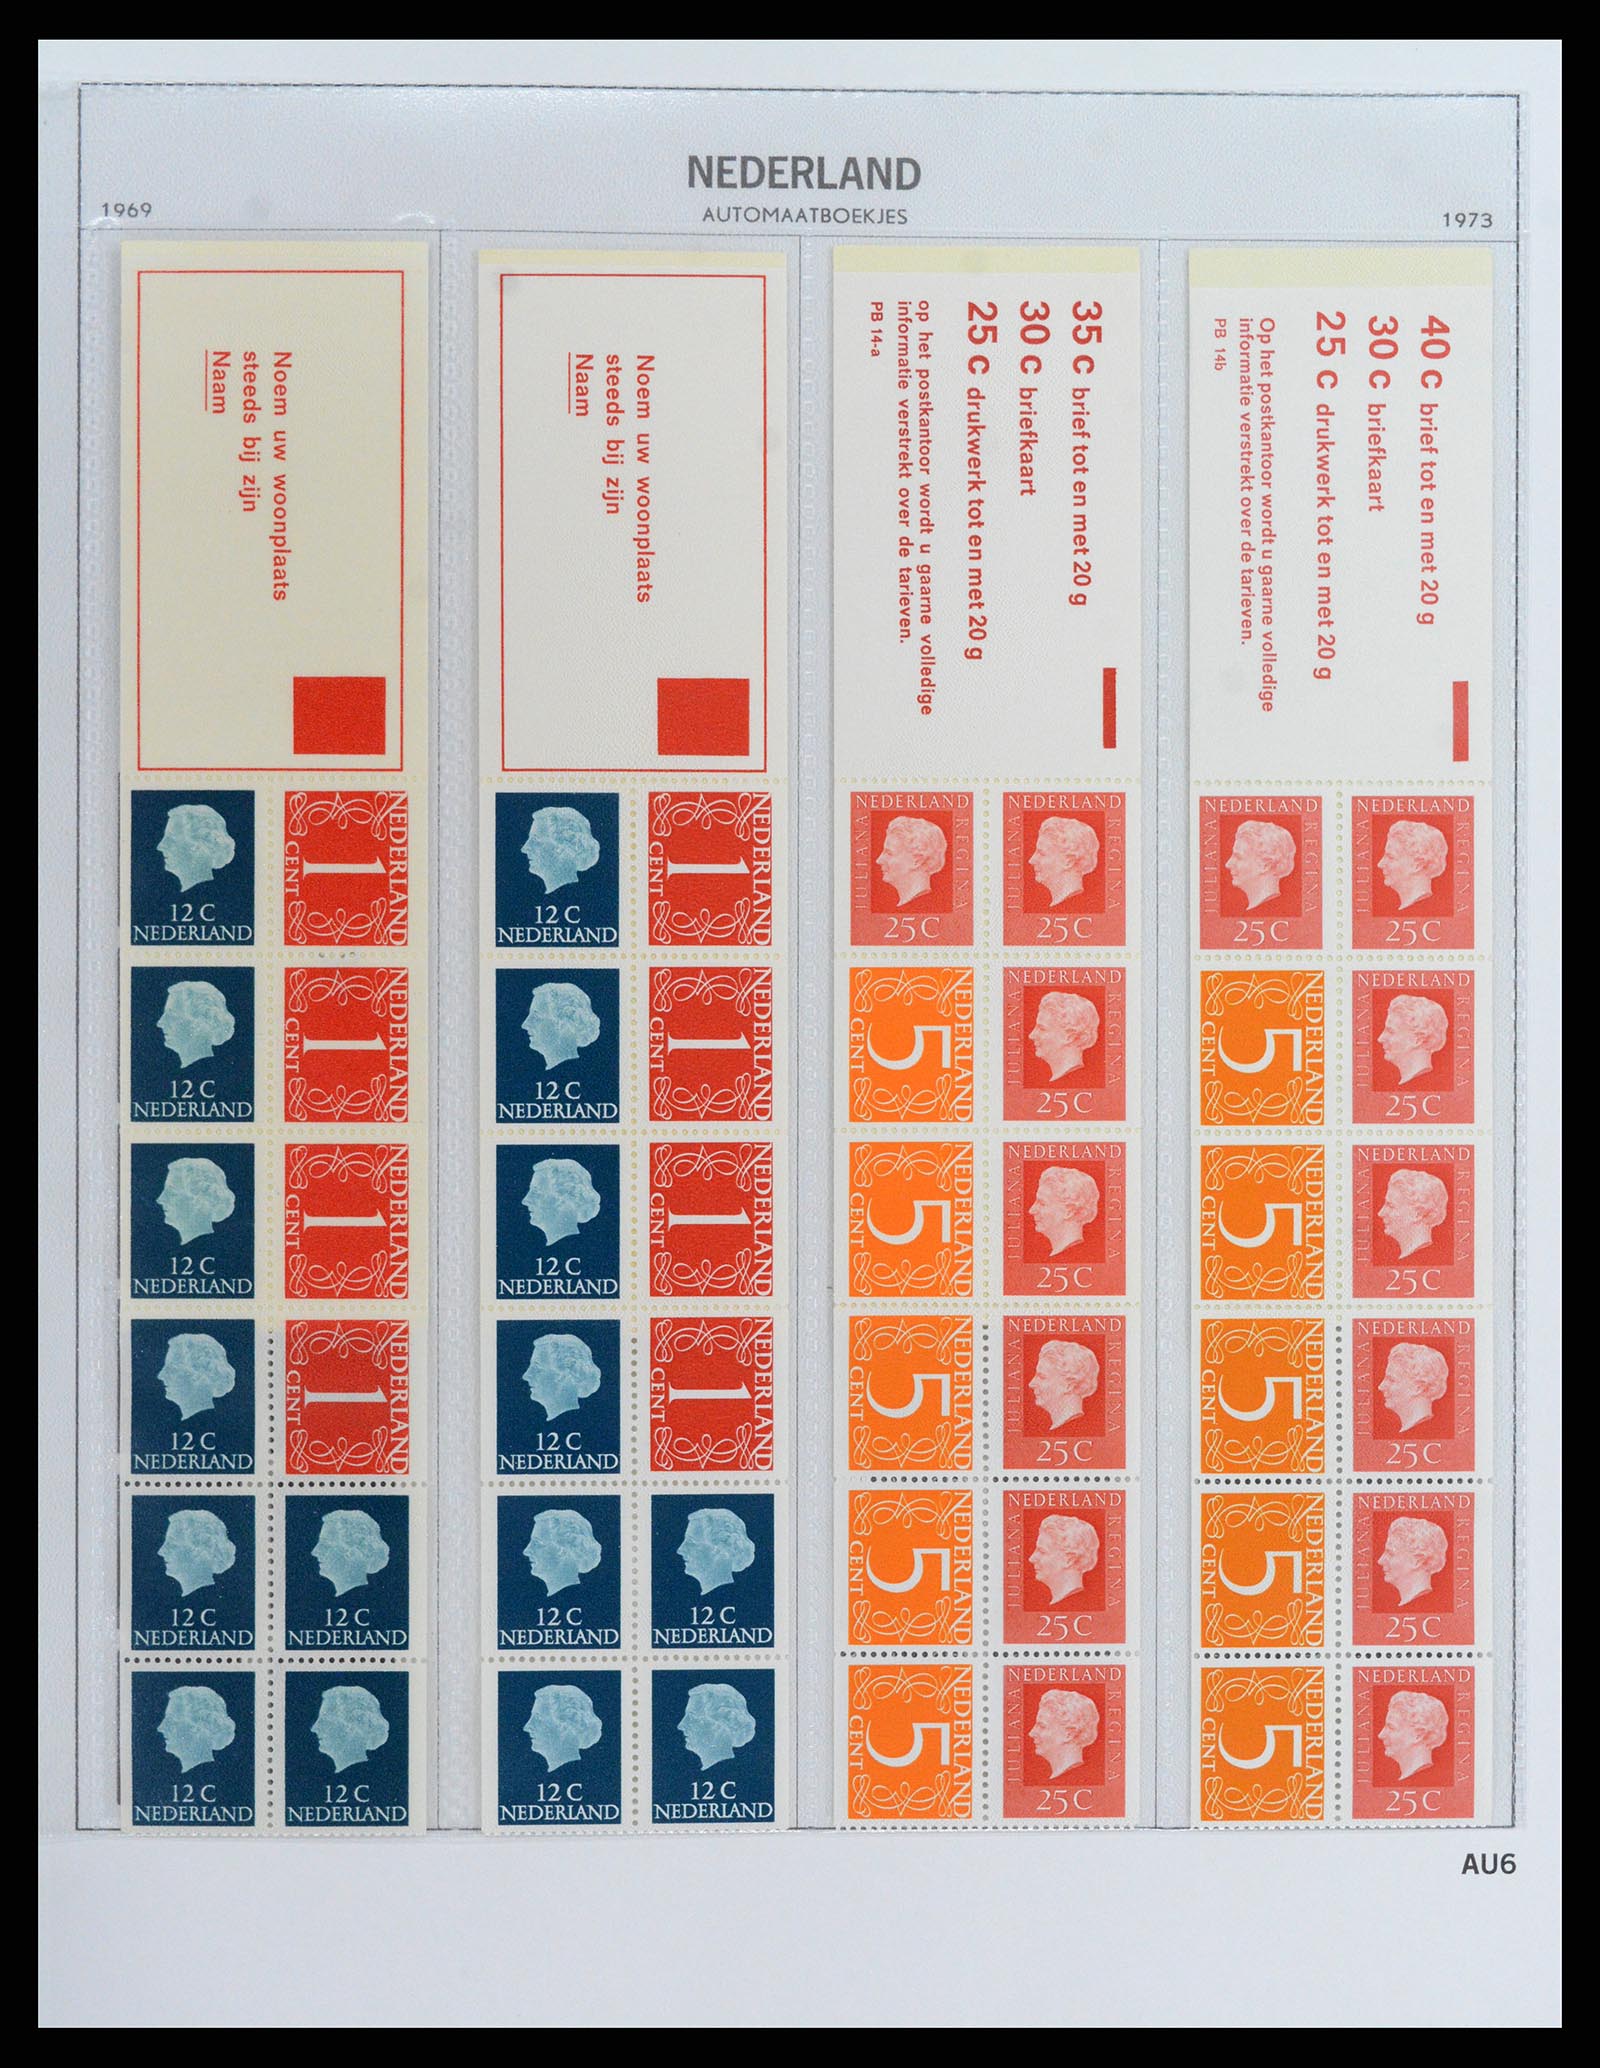 37871 006 - Stamp Collection 37871 Netherlands stampbooklets 1964-2000.